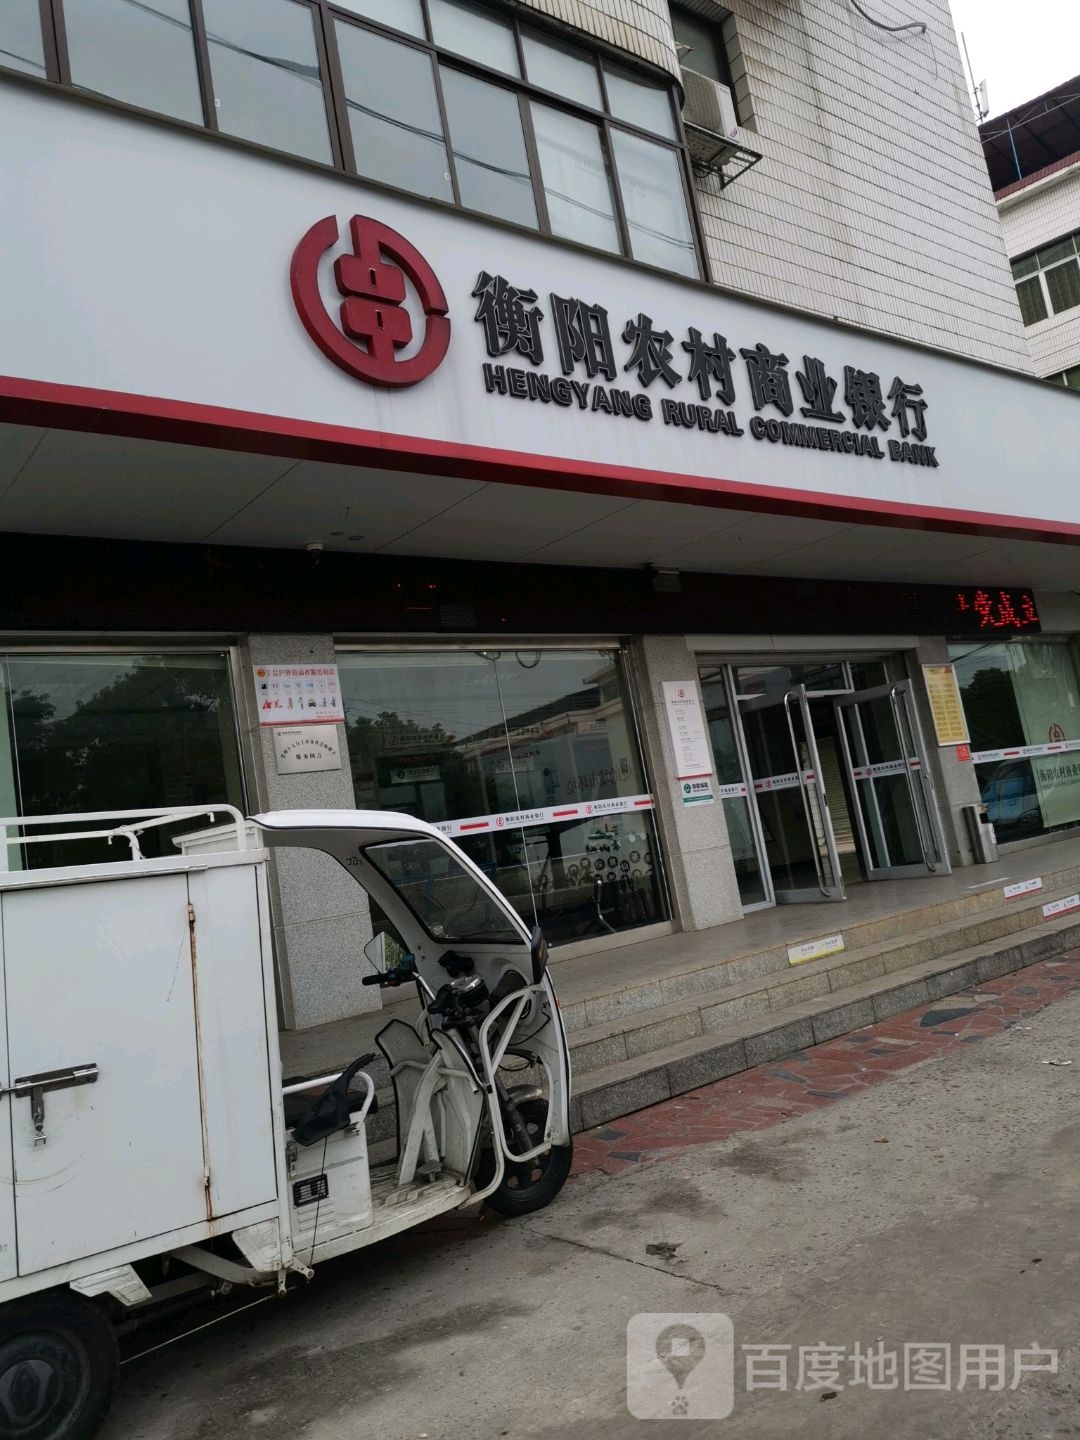 衡阳农村商业银行(茶山农村信用合作社)